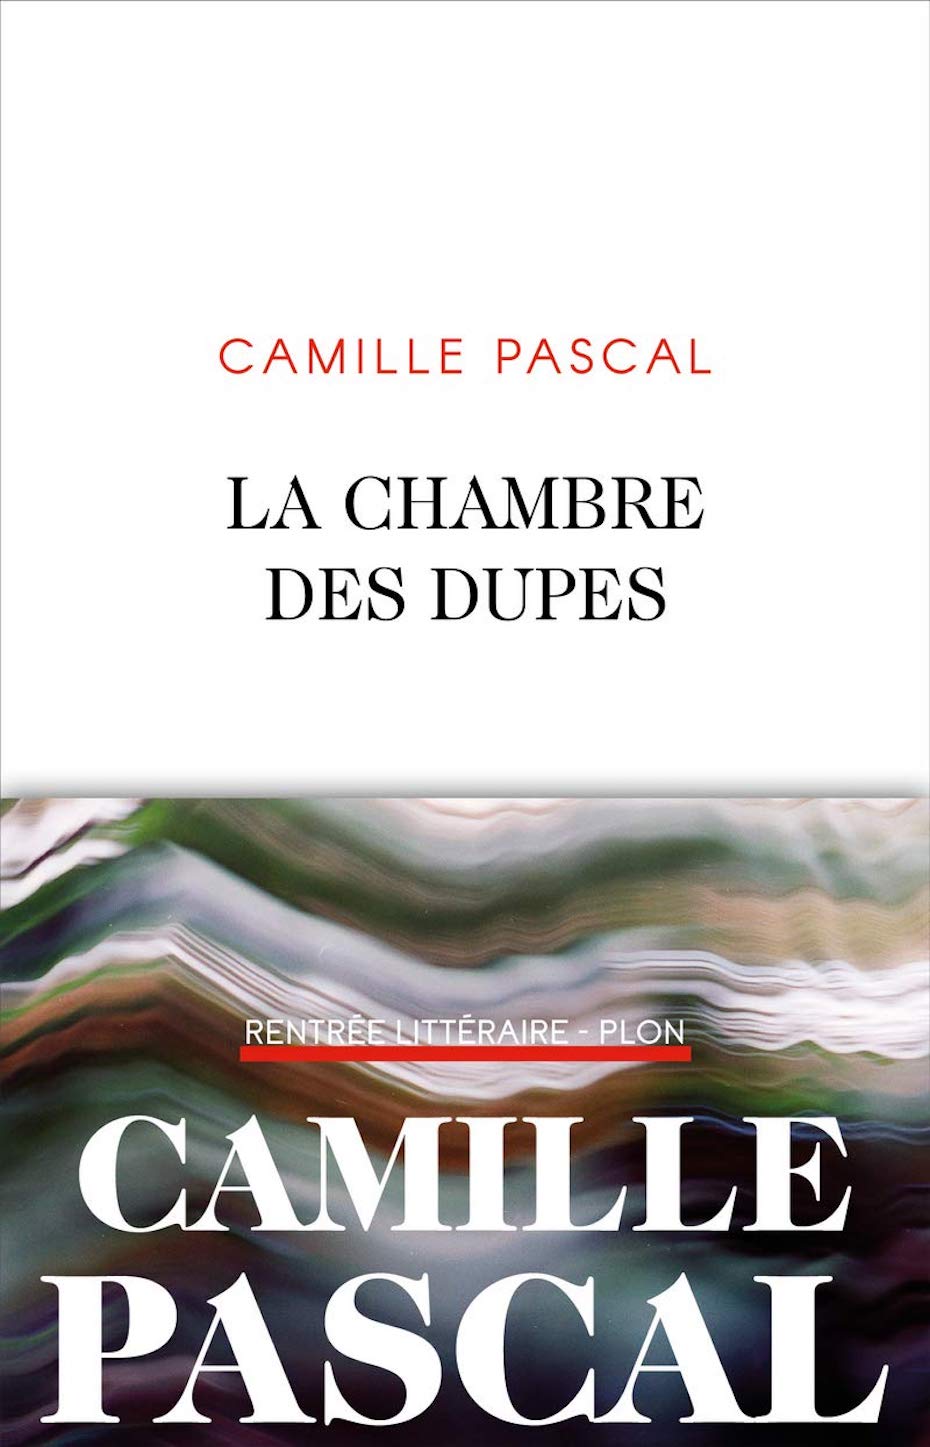 Camille Pascal, La chambre des dupes (Plon)